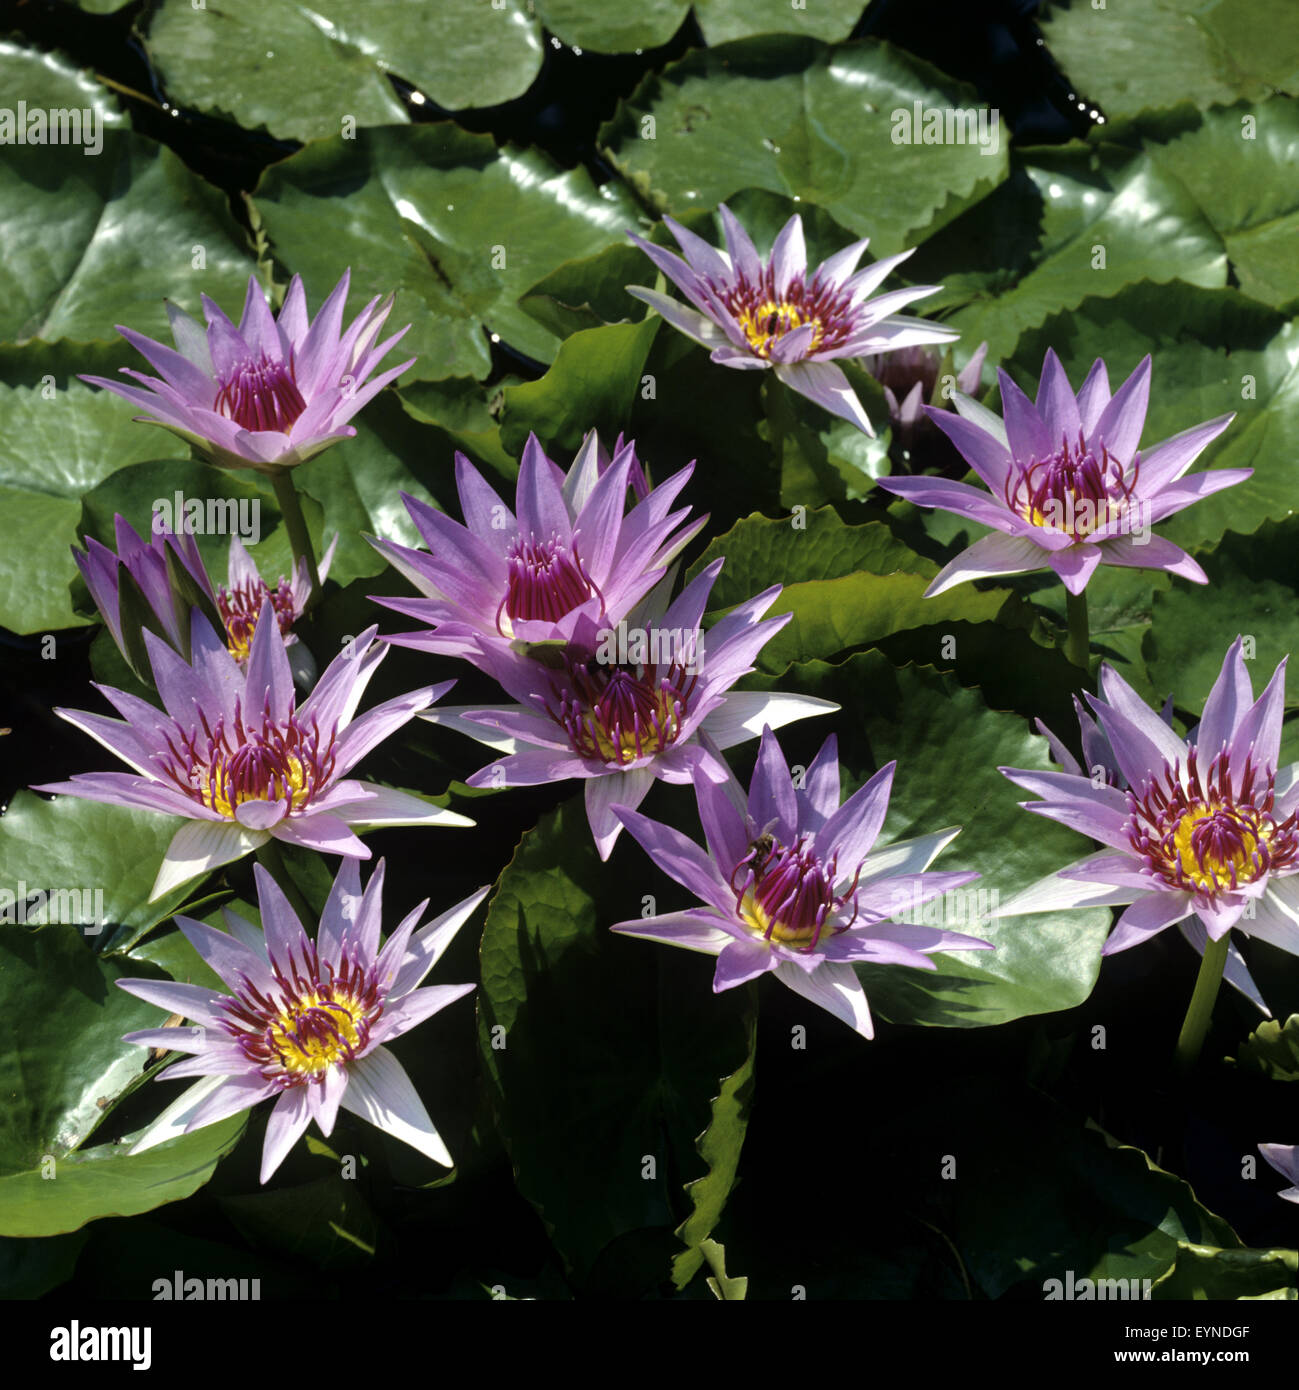 https://c8.alamy.com/comp/EYNDGF/blauer-aegyptischer-lotus-nymphaea-caerulea-wasserpflanzen-EYNDGF.jpg